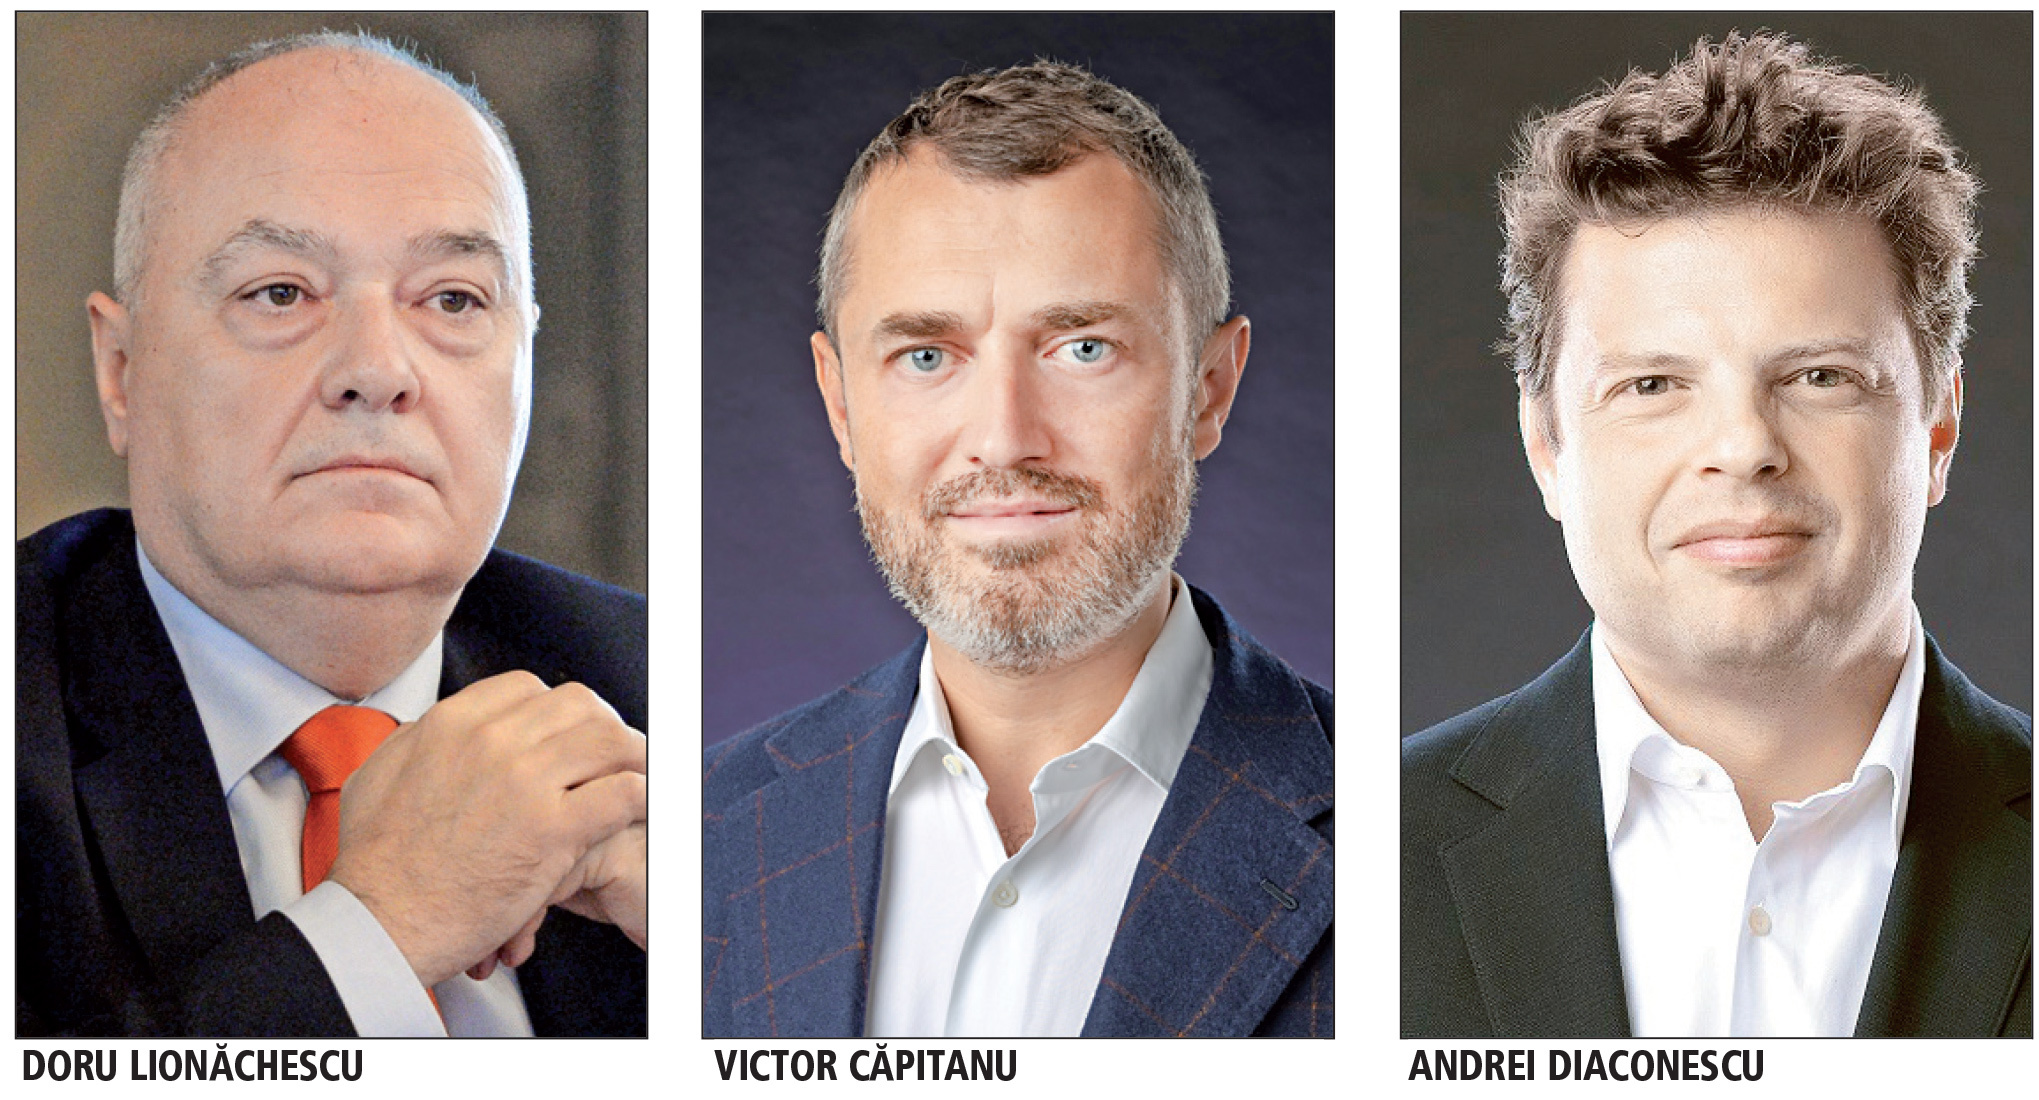 Exclusivitate ZF: Doru Lionăchescu, Victor Căpitanu şi Andrei Diaconescu fac o companie de investiţii, care are câteva zeci de milioane de euro pentru firme cu mare potenţial de creştere